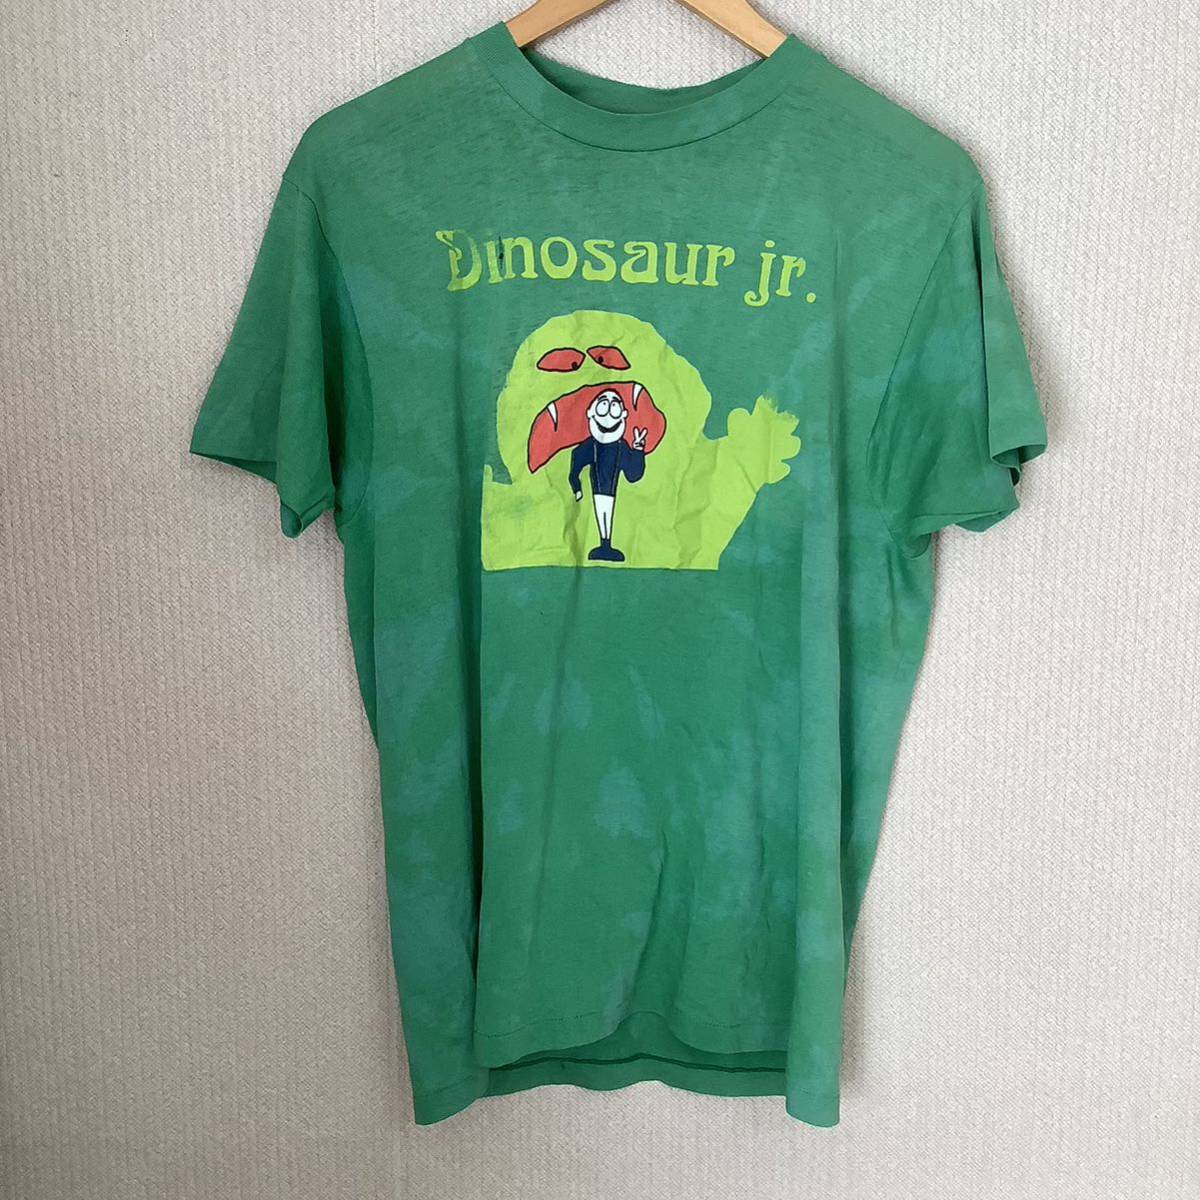 スペシャル 1990s Dinosaur Jr. ロンドン公演 3days限定 ヴィンテージ Tシャツ Hanes製 サイズL 80s 90s オルタナティブ_画像1